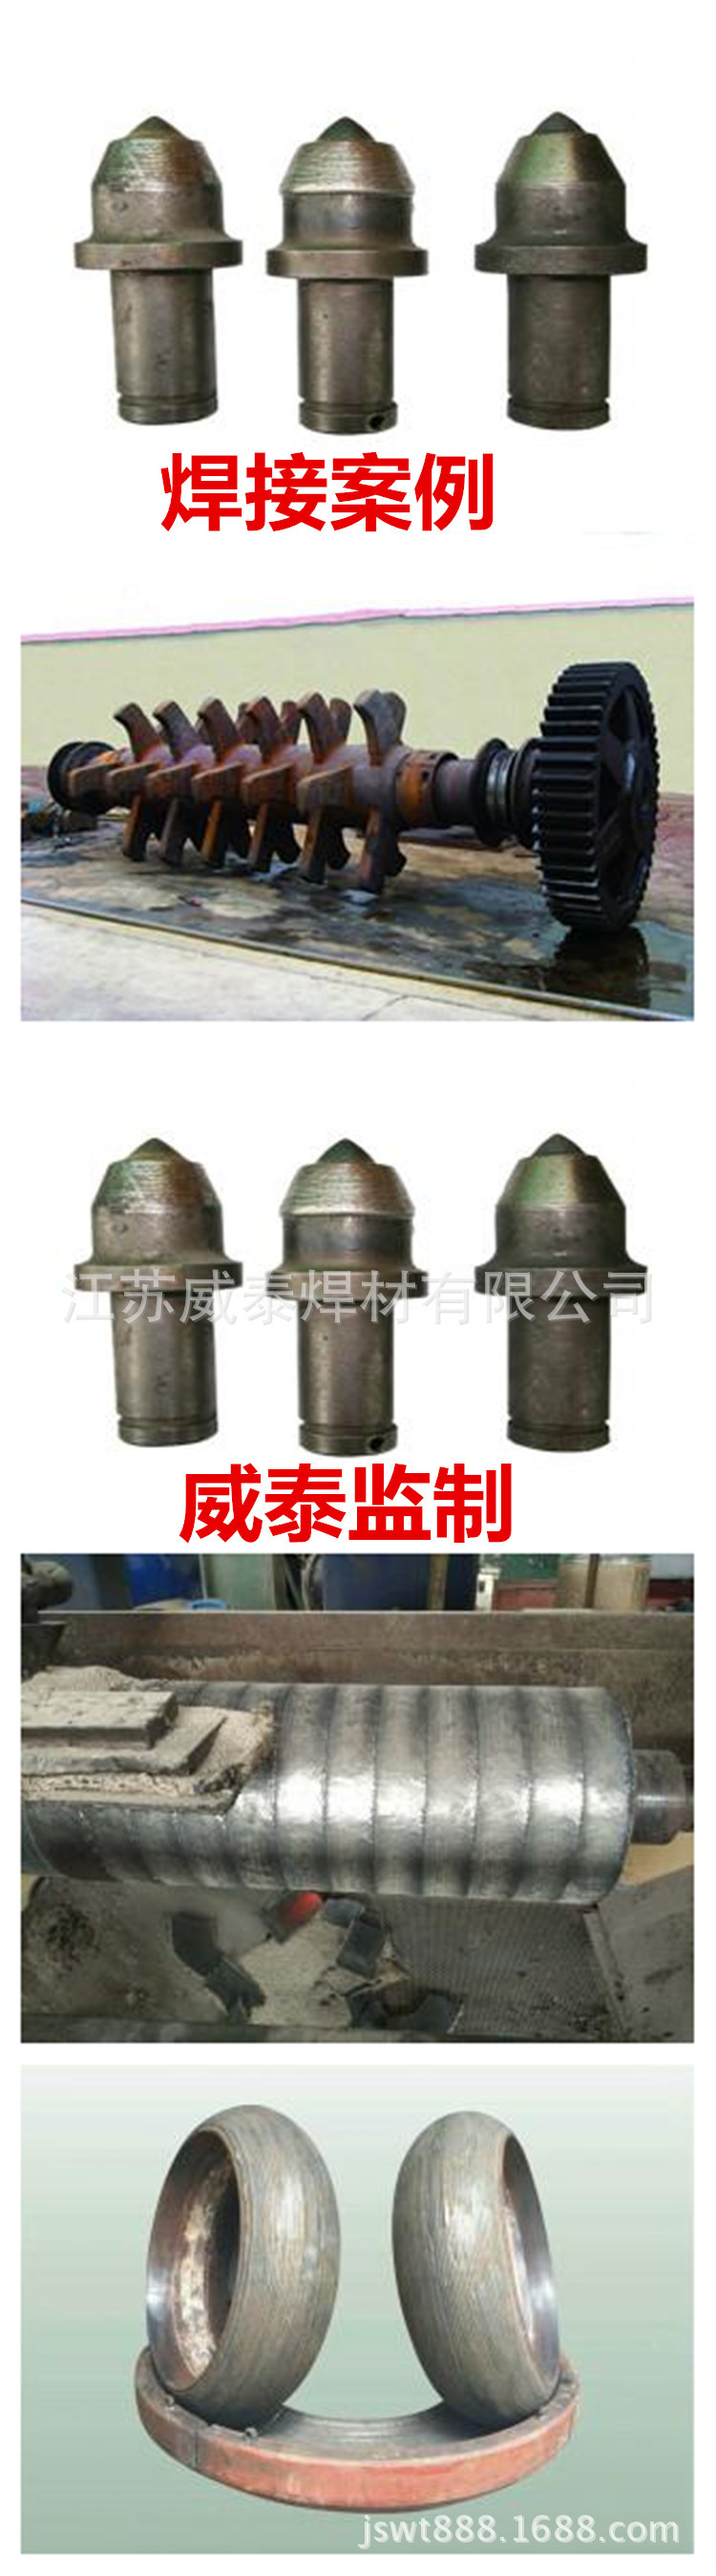 供应D707耐磨焊条 耐高温 堆焊焊条 耐磨耐冲击示例图3